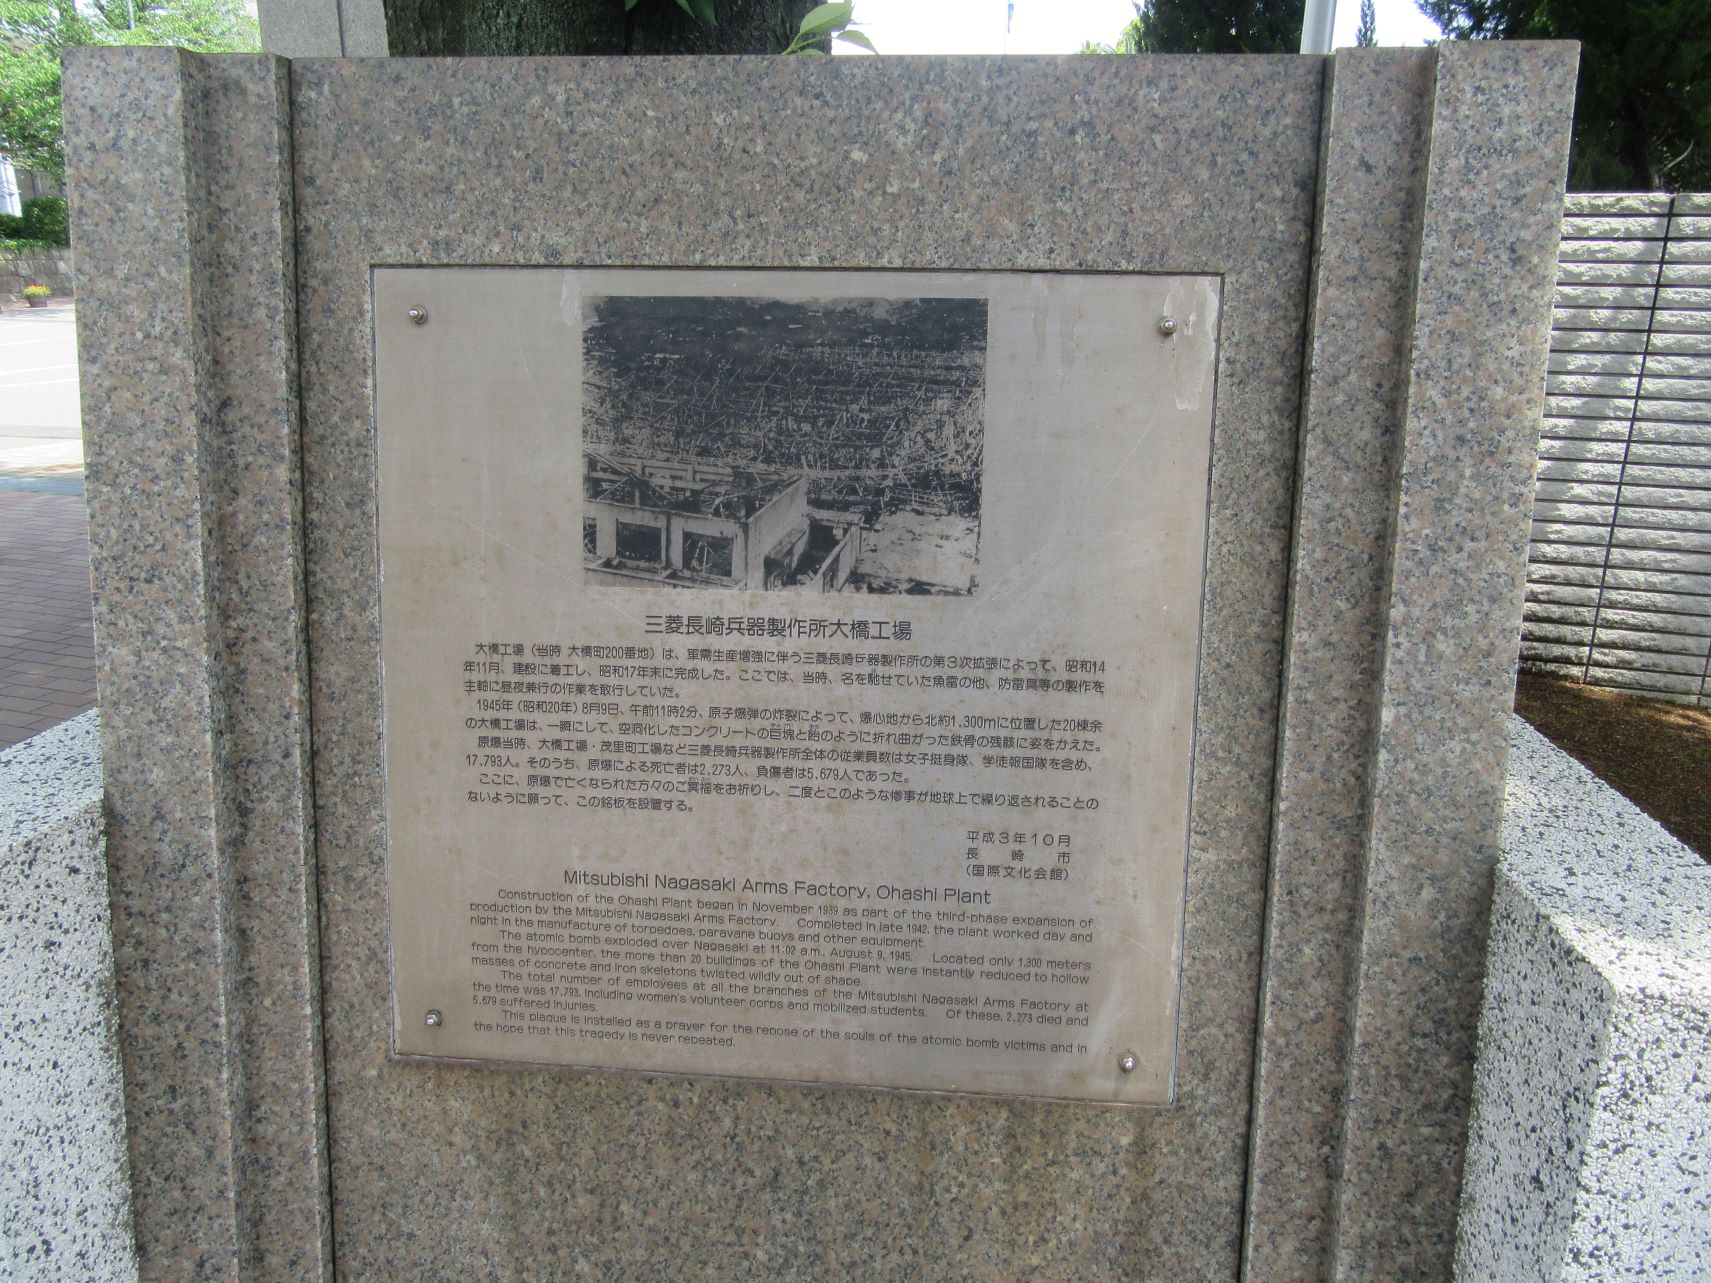 長崎大学文教キャンパス正門にある、三菱長崎兵器製作所大橋工場跡地の銘板。